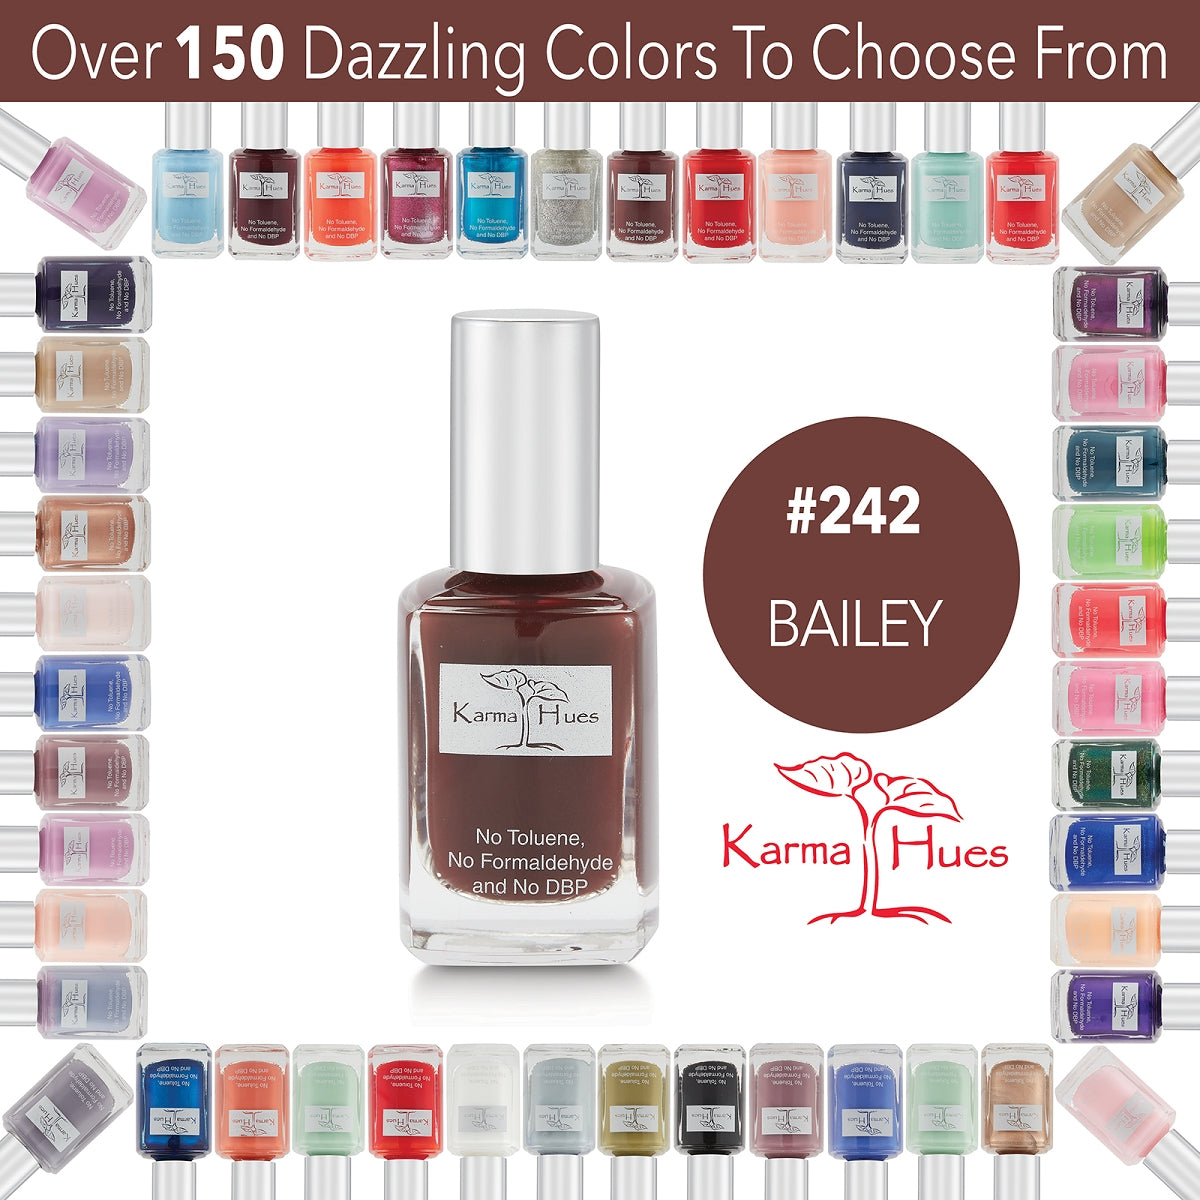 Bailey - Nail Polish; Non-Toxic, Vegan, and Cruelty-Free (#242)